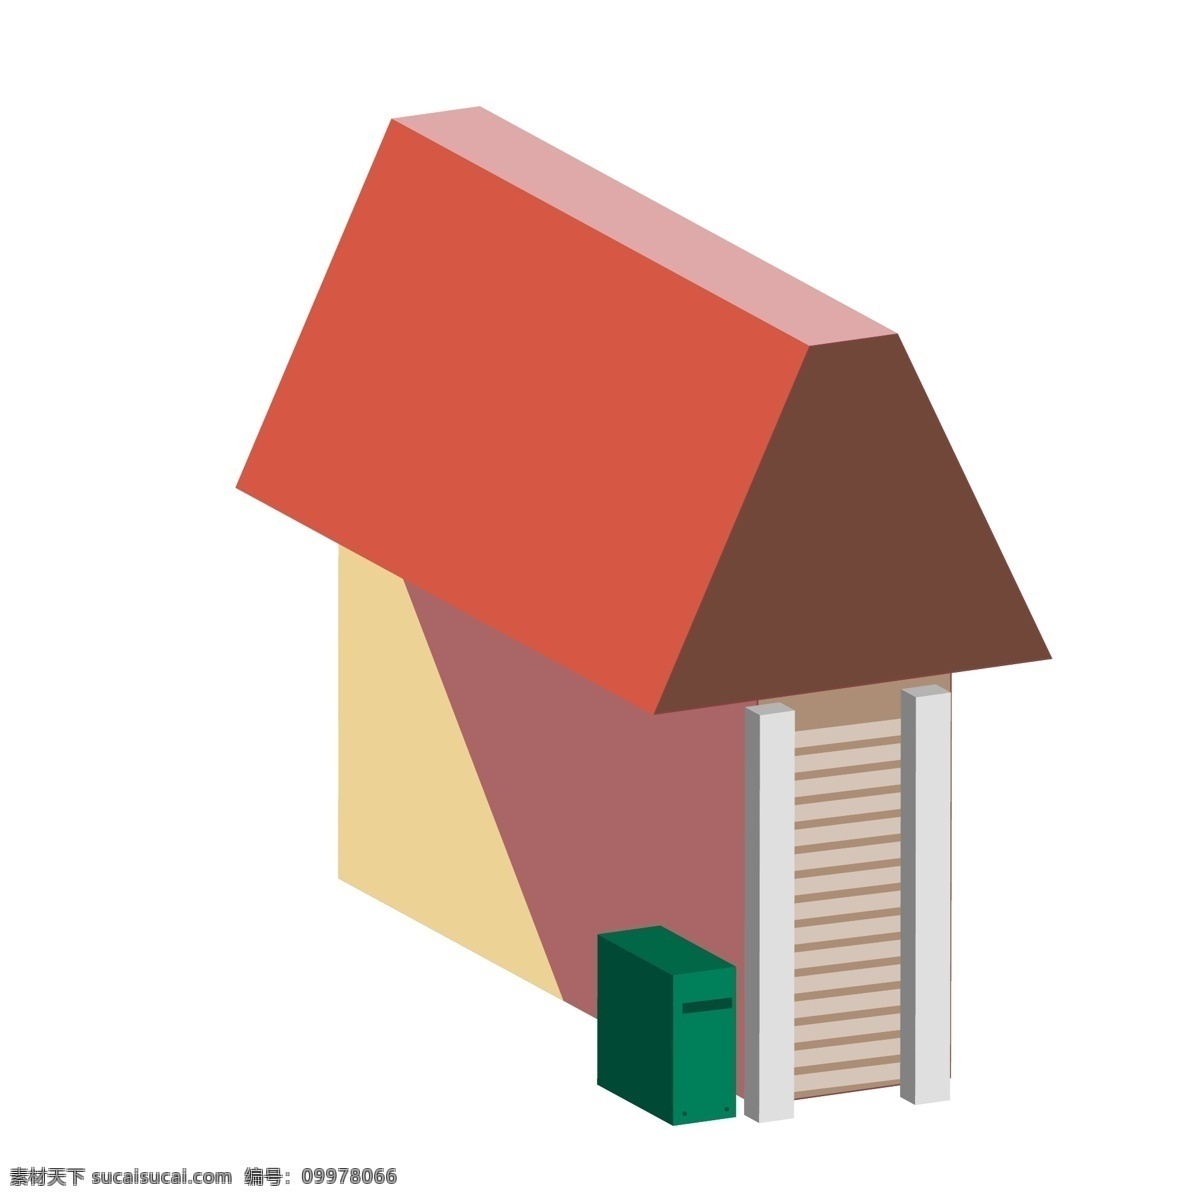 美丽 建筑 房子 插画 红色的房顶 卡通插画 建筑插画 房子插画 围墙 房顶 屋顶 绿色的垃圾桶